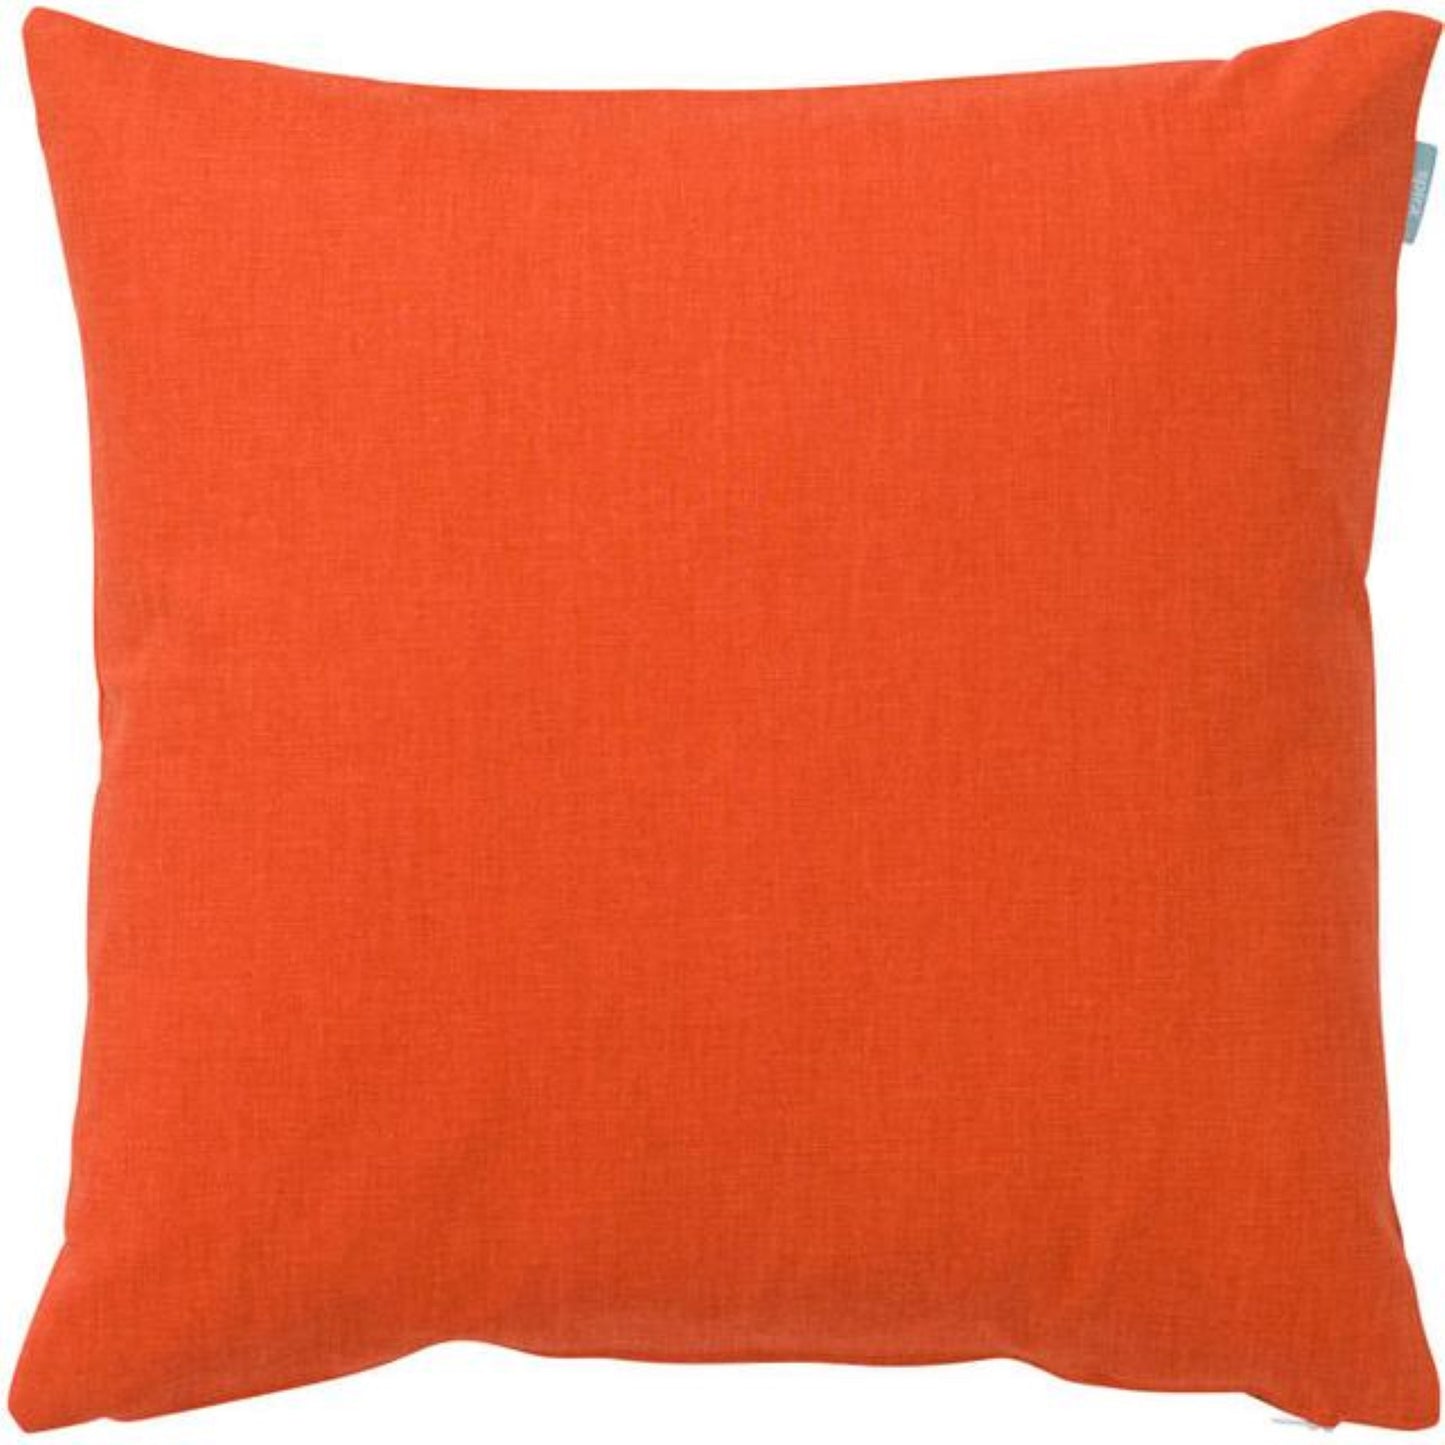 Slat Cushion Cover - Orange